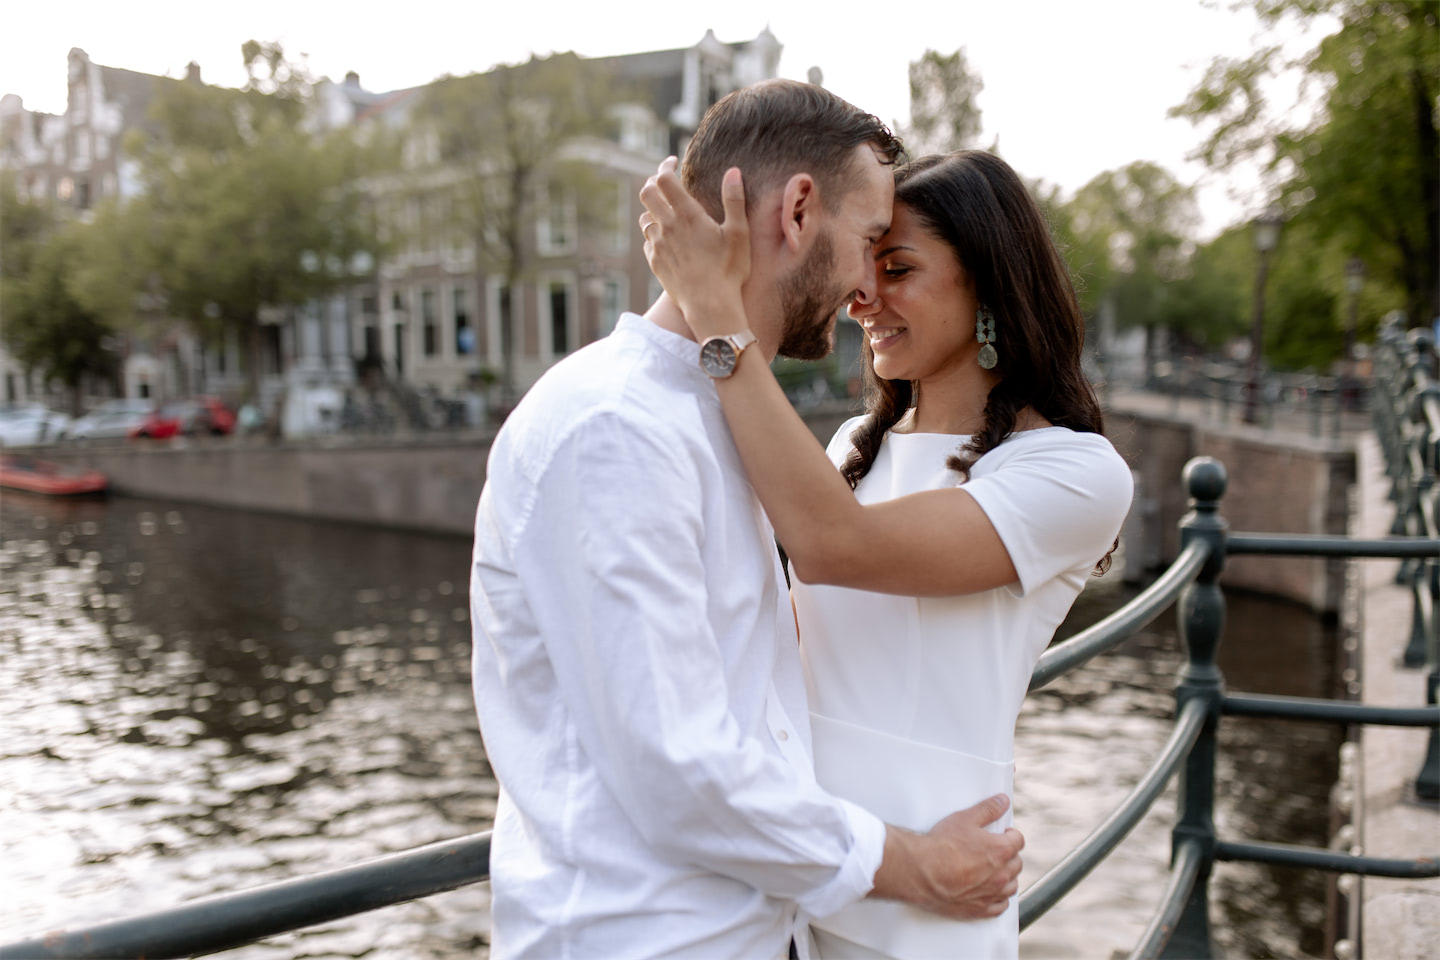 Thaïsa en Roy vieren hun liefde tijdens een betoverende grachtentocht in Amsterdam